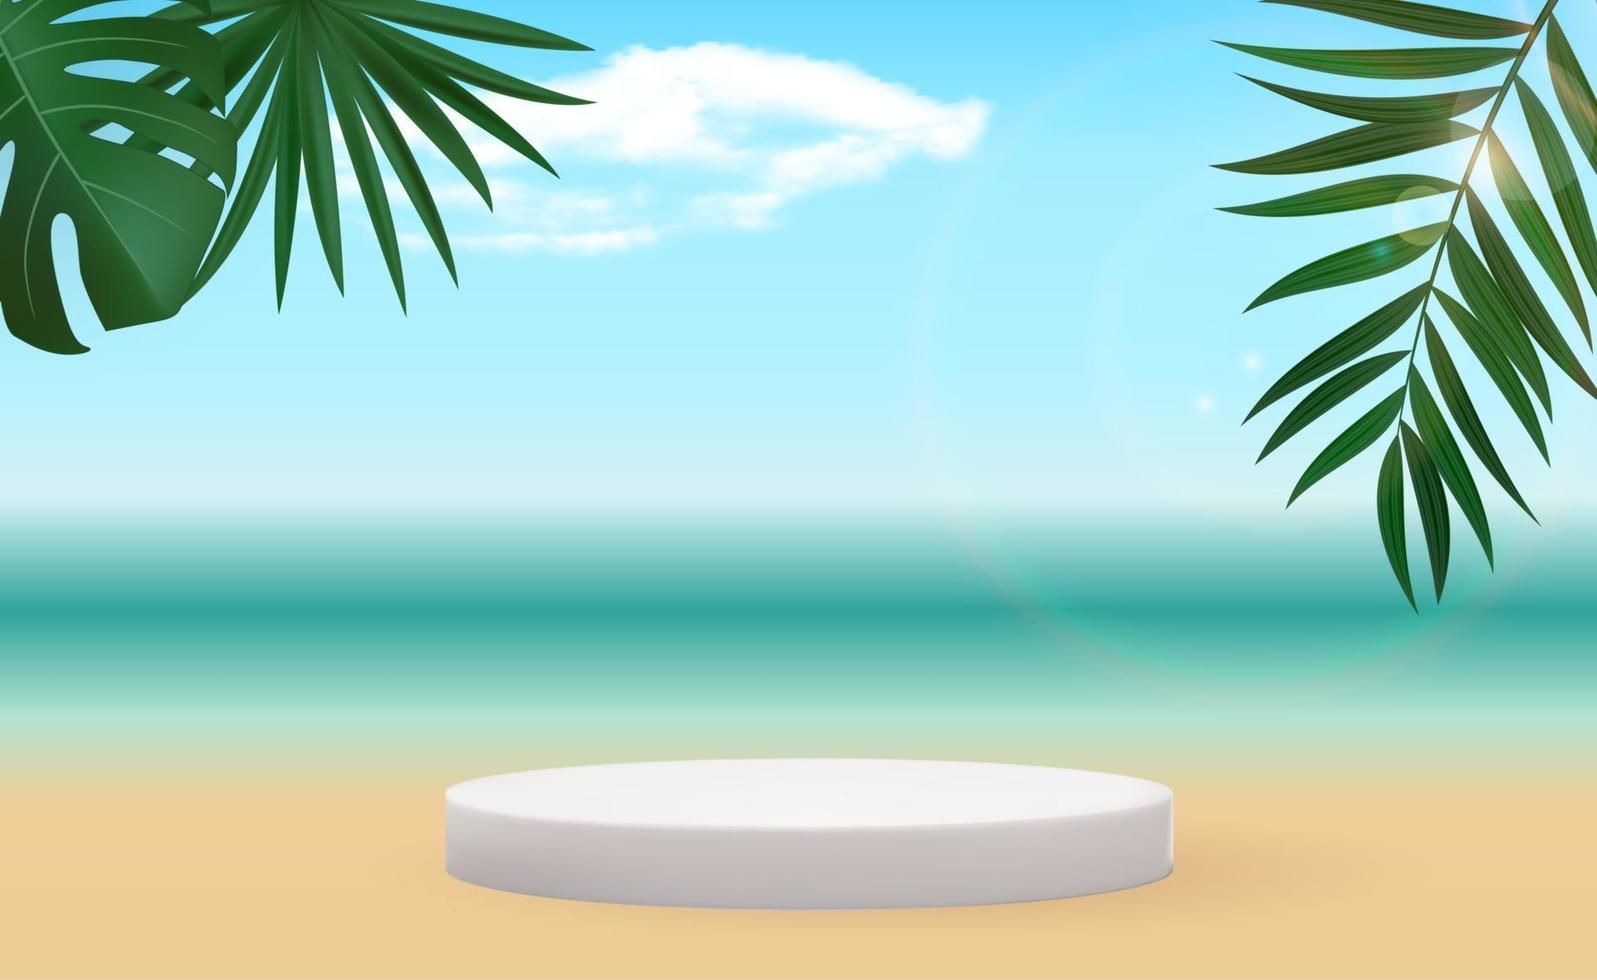 pedestal 3d realista sobre fondo soleado con hojas de palmera. vector